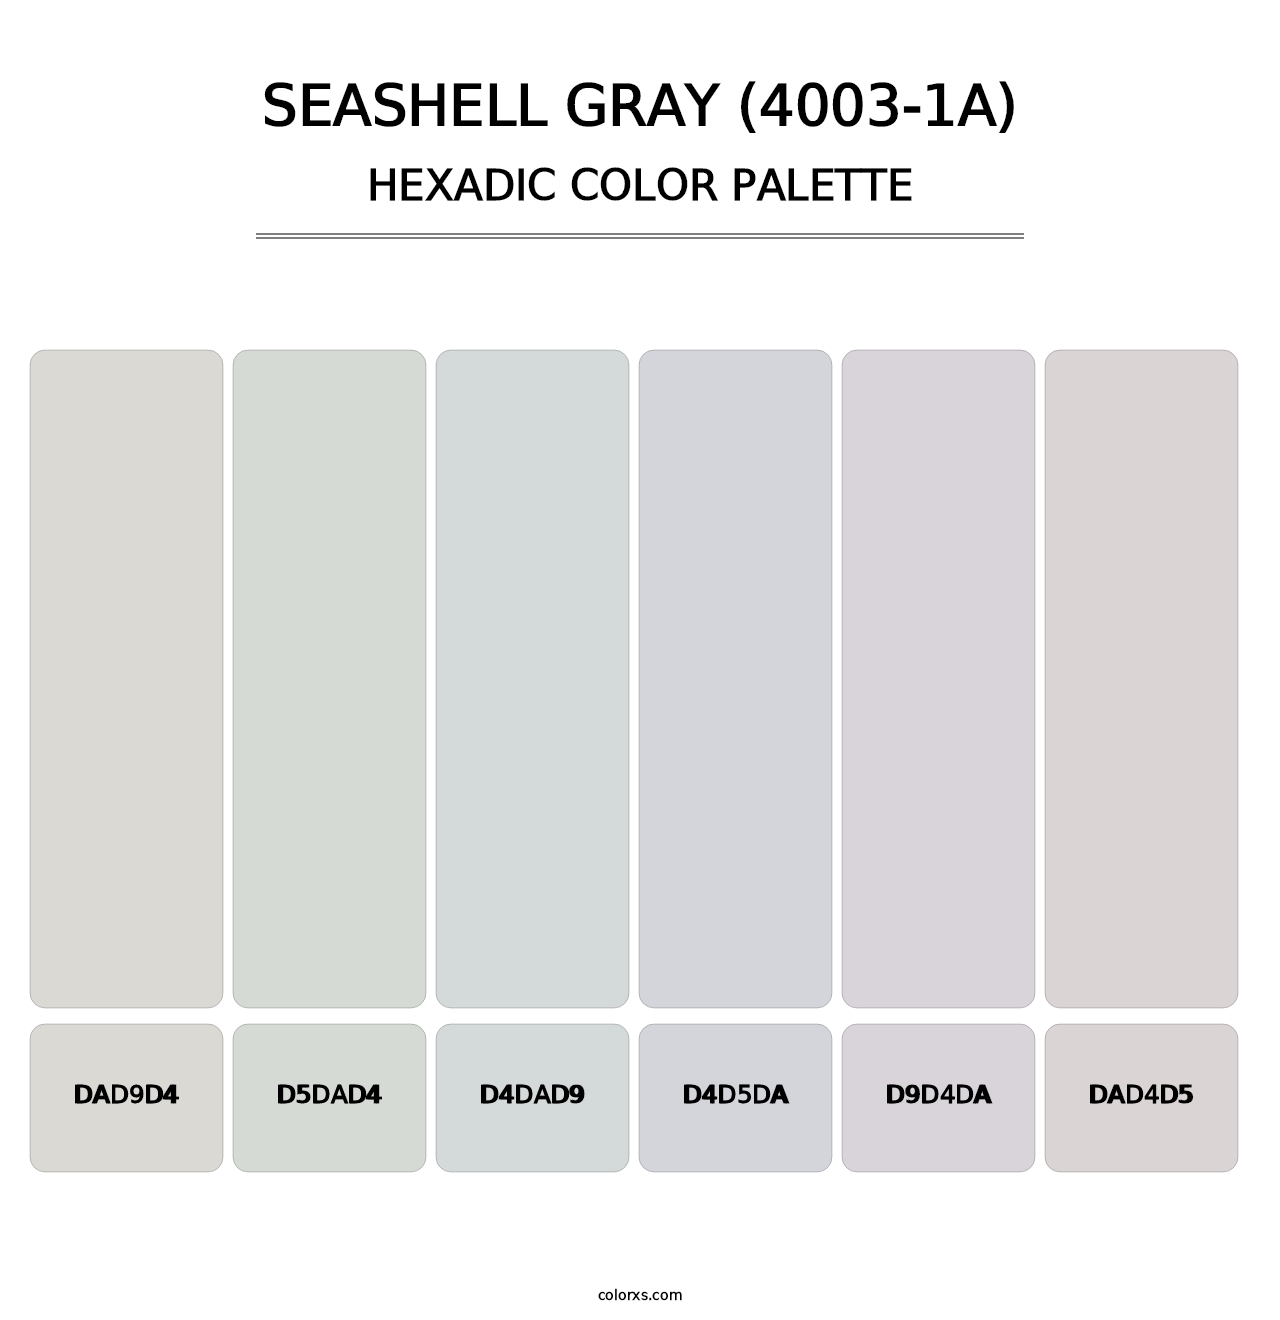 Seashell Gray (4003-1A) - Hexadic Color Palette